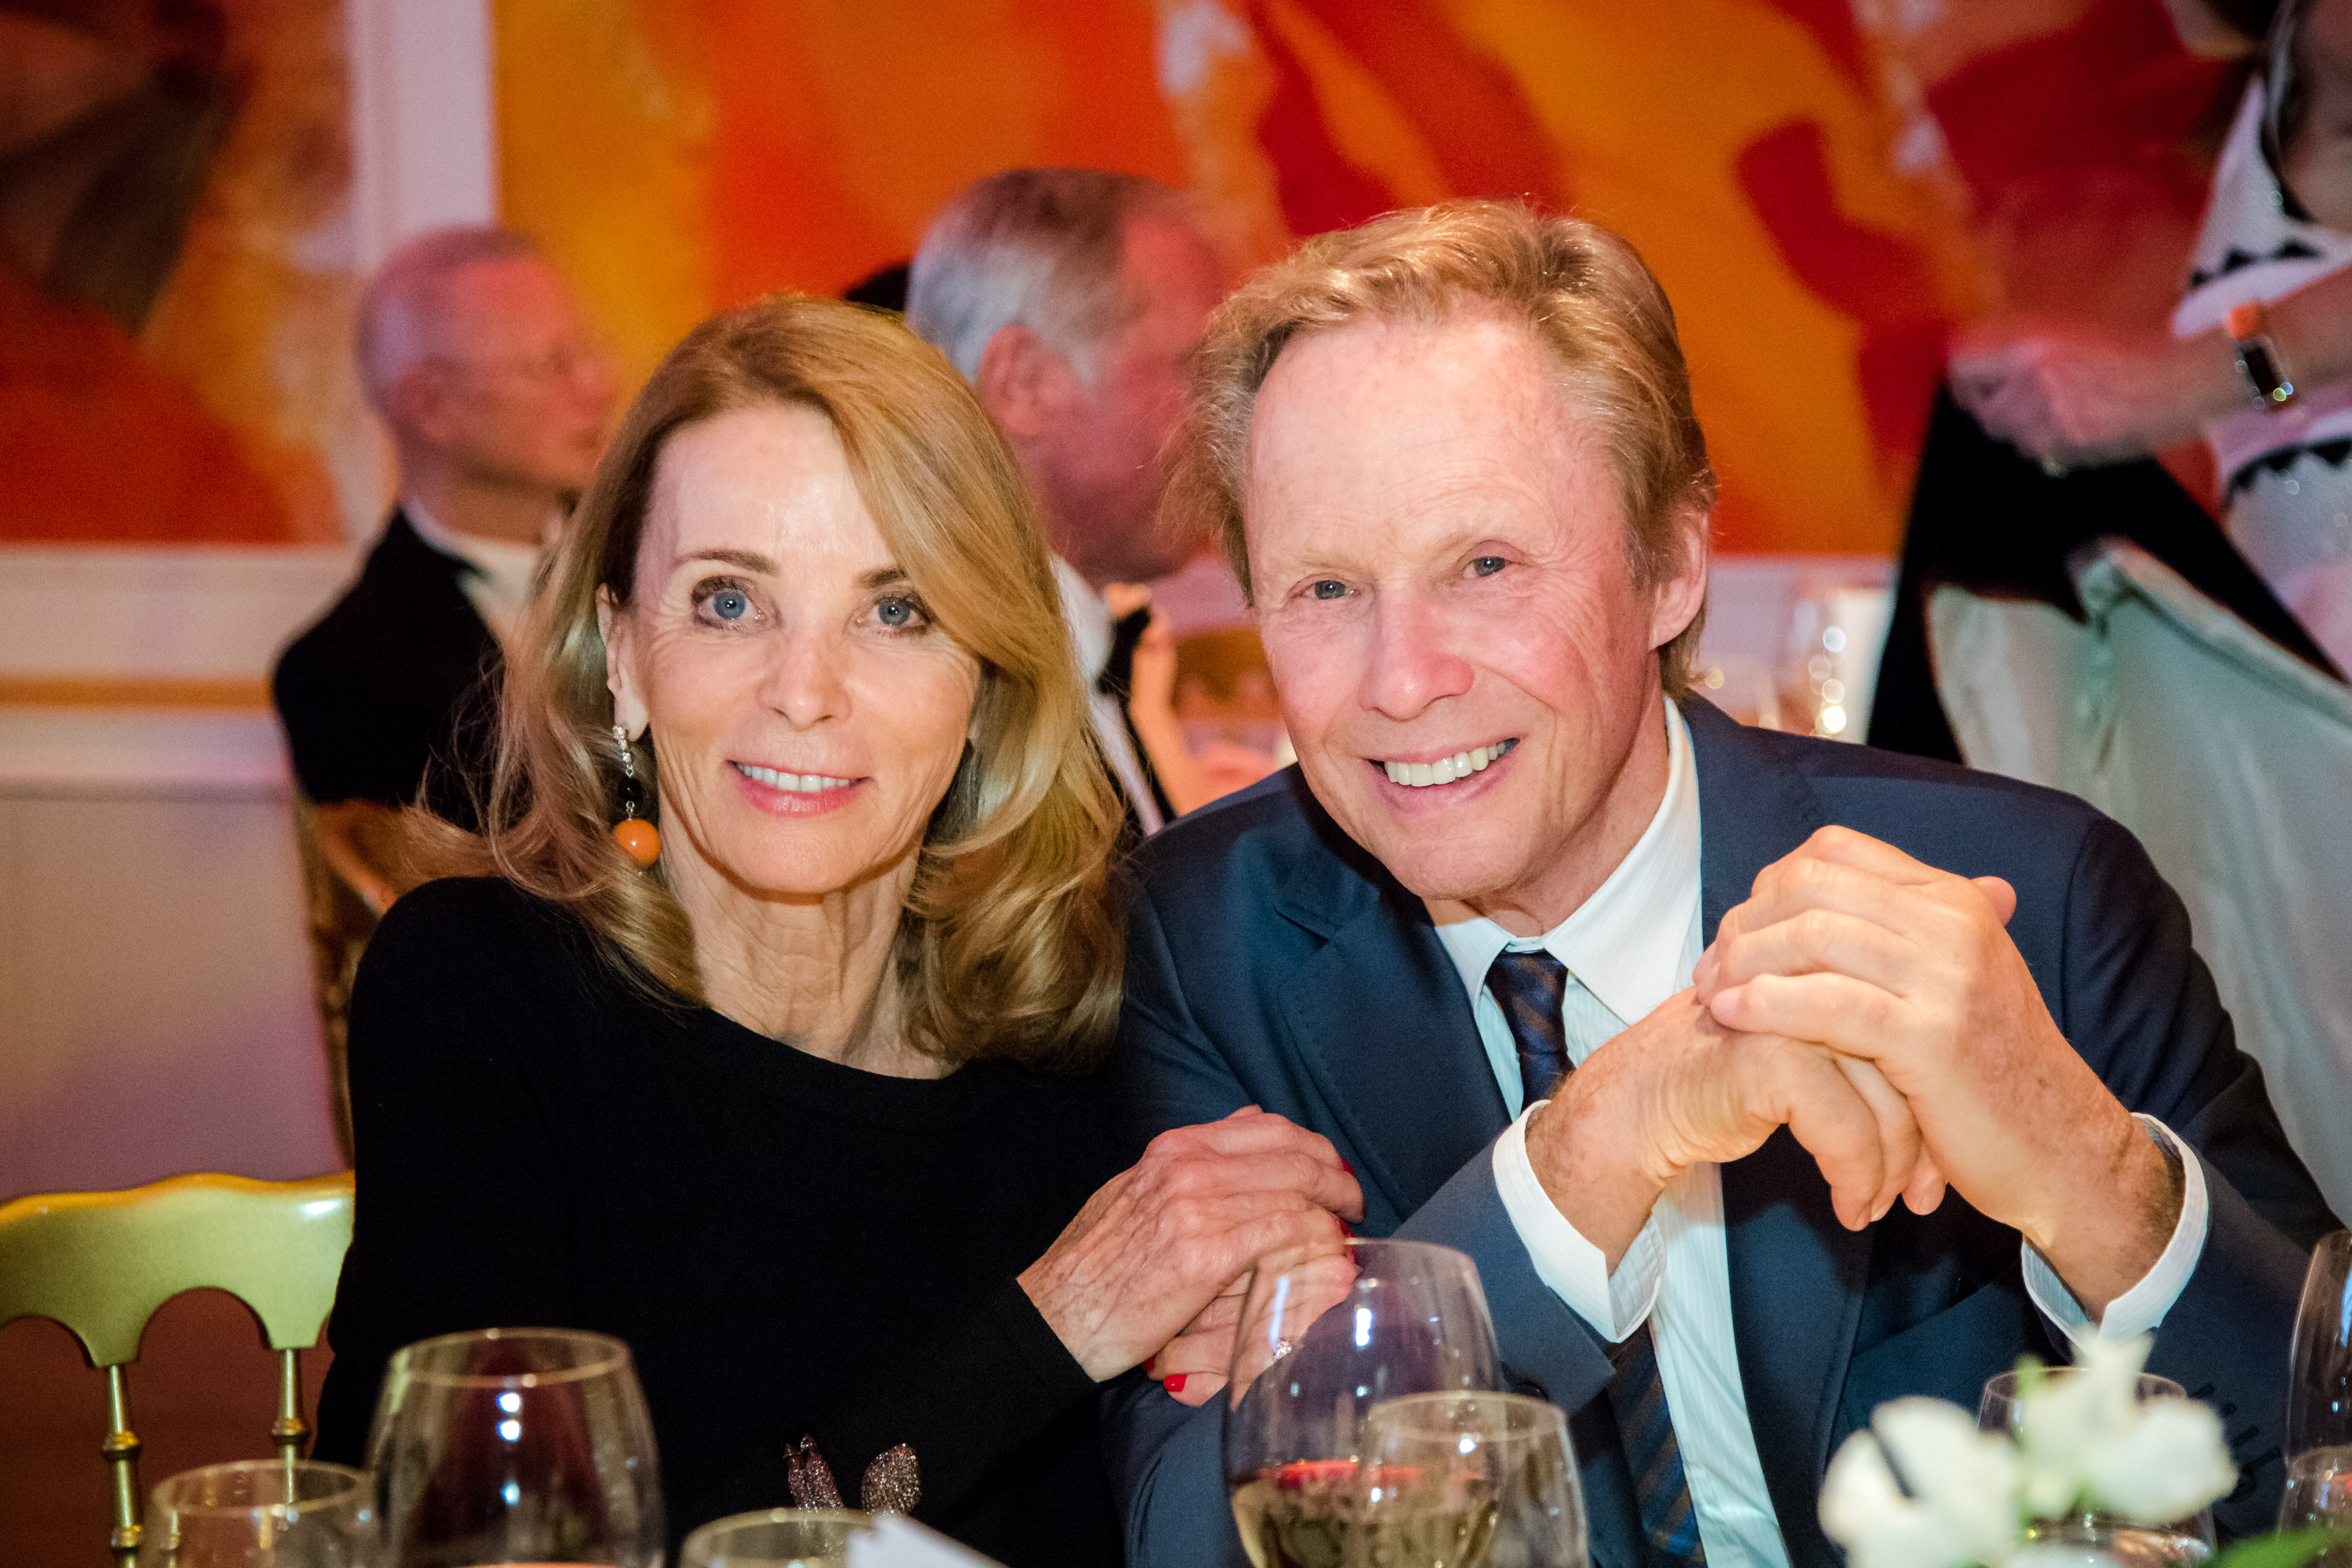 Peter Kraus mit seiner Frau Ingrid bei der Feier zu Karl Spiehs 85. Geburtstag am 19. März 2016 in Wien, Österreich | Quelle: Getty Images